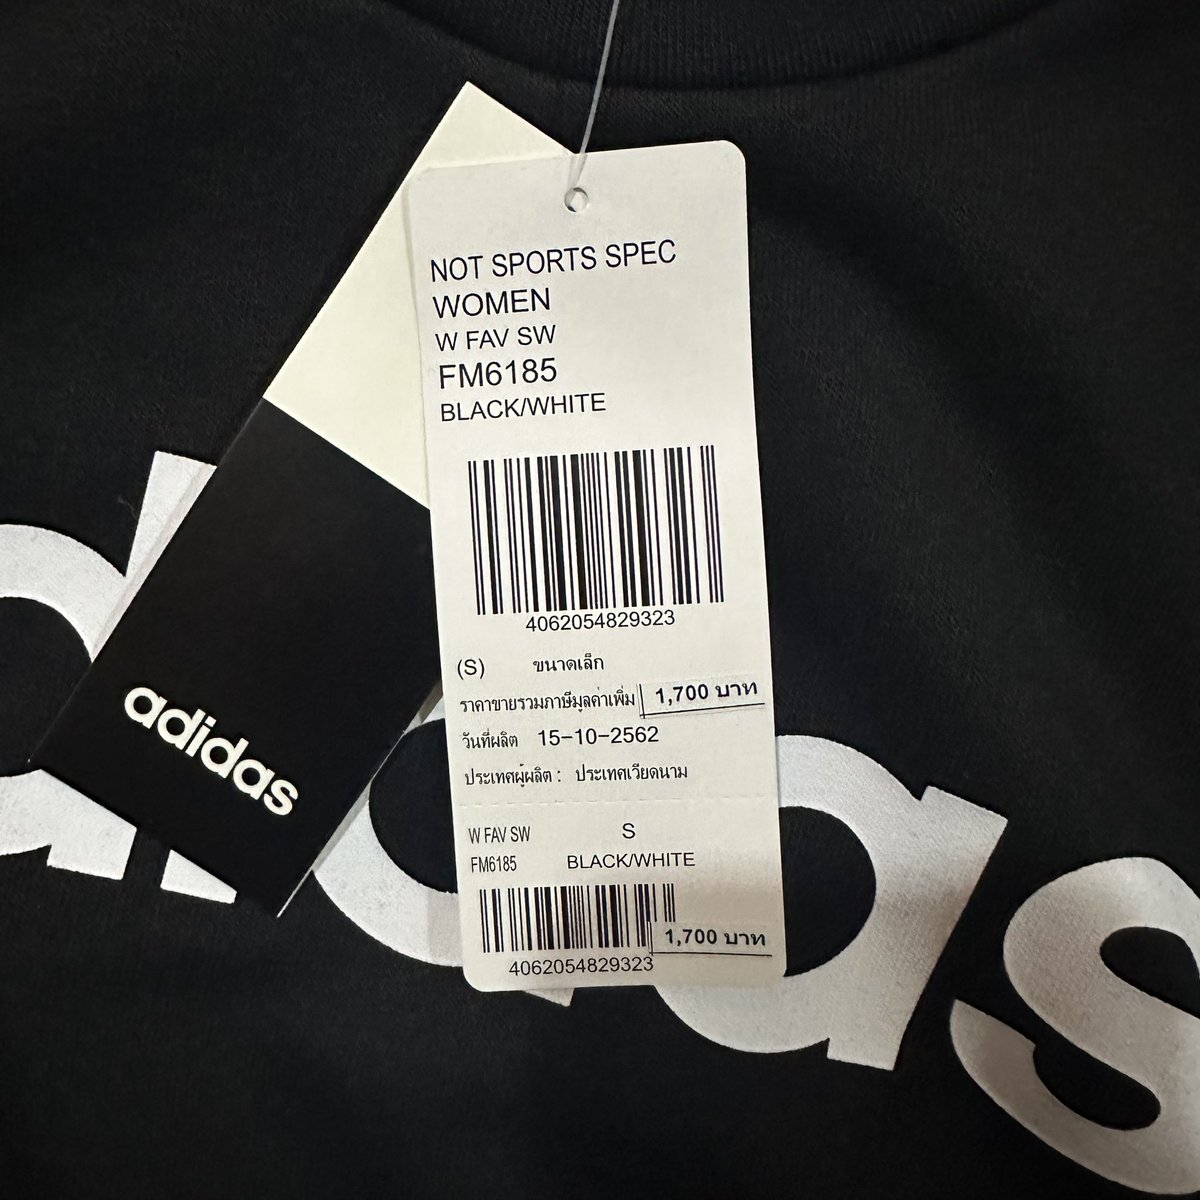 ส่งต่อ NOT SPORTS SPEC
WOMEN black size s ผ้าดีมากคับนุ่มมาก ใส่สบาย ทรงสวย ป้ายอยู่ครบ ไม่มีตำหนิ 680 free shipping 🤍#โล๊ะตู้เสื้อผ้า #โล๊ะตู้เสื้อผ้ามือ2 #เสื้อผ้ามือ2 #adidasthailand #adidasมือสอง #ส่งต่อadidasมือสอง #ส่งต่อกระเป๋าadidas #ส่งต่อเสื้อผ้ามือ2 #ส่งต่อเสื้อผ้า